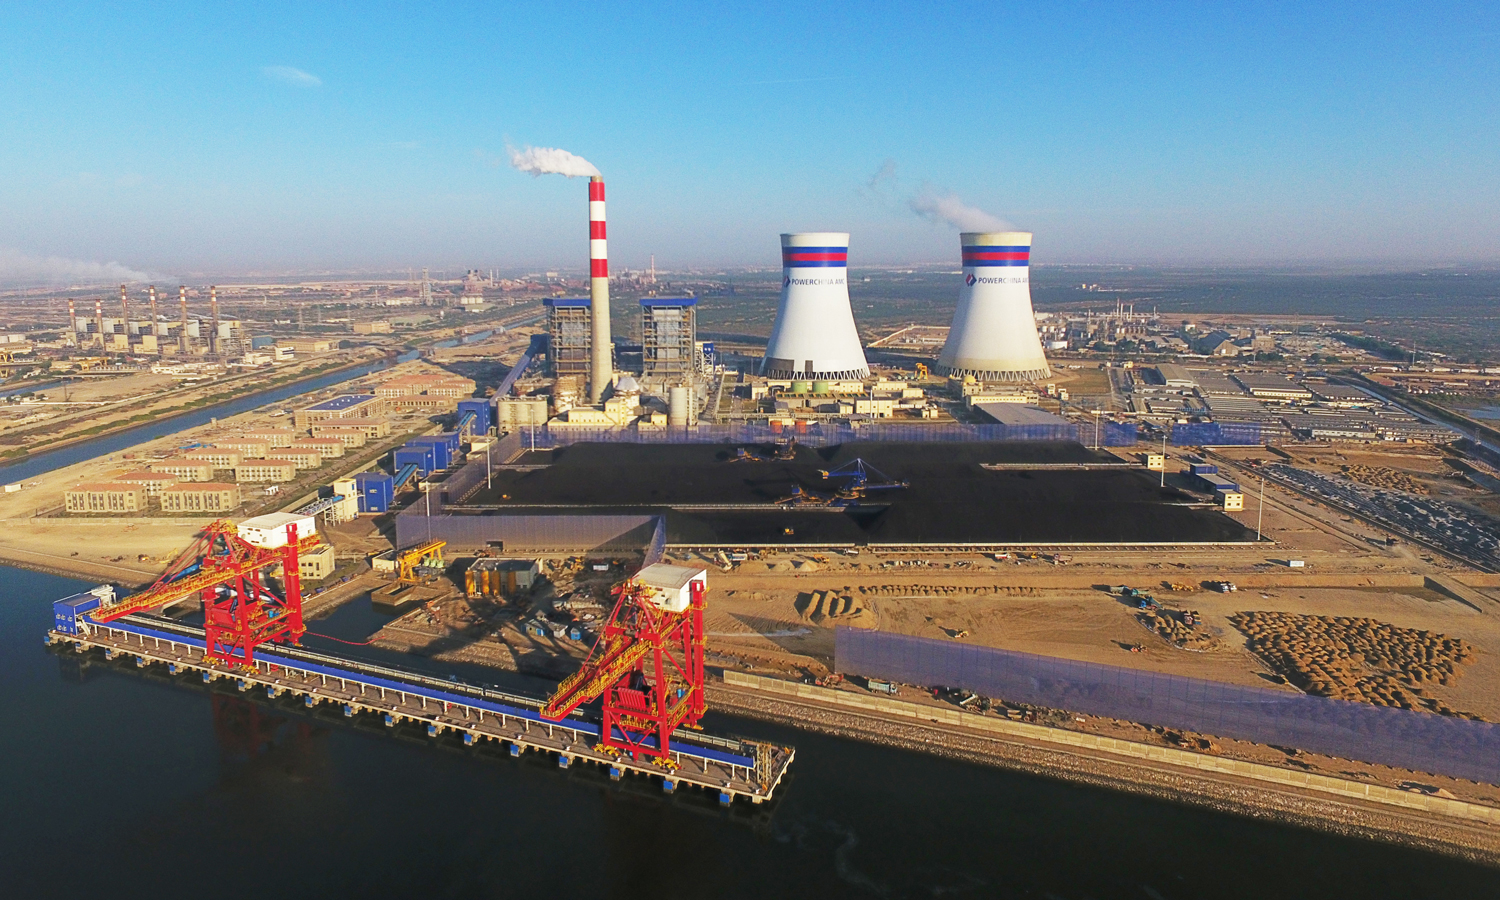 中国电建投资建设的“中巴经济走廊”首个落地能源项目——巴基斯坦卡西姆港燃煤电站历经30个月的艰苦建设，首台机组于29日正式投产发电，标志着中巴经济走廊早期收获项目中的又一个重大能源项目进入实质性生产阶段。